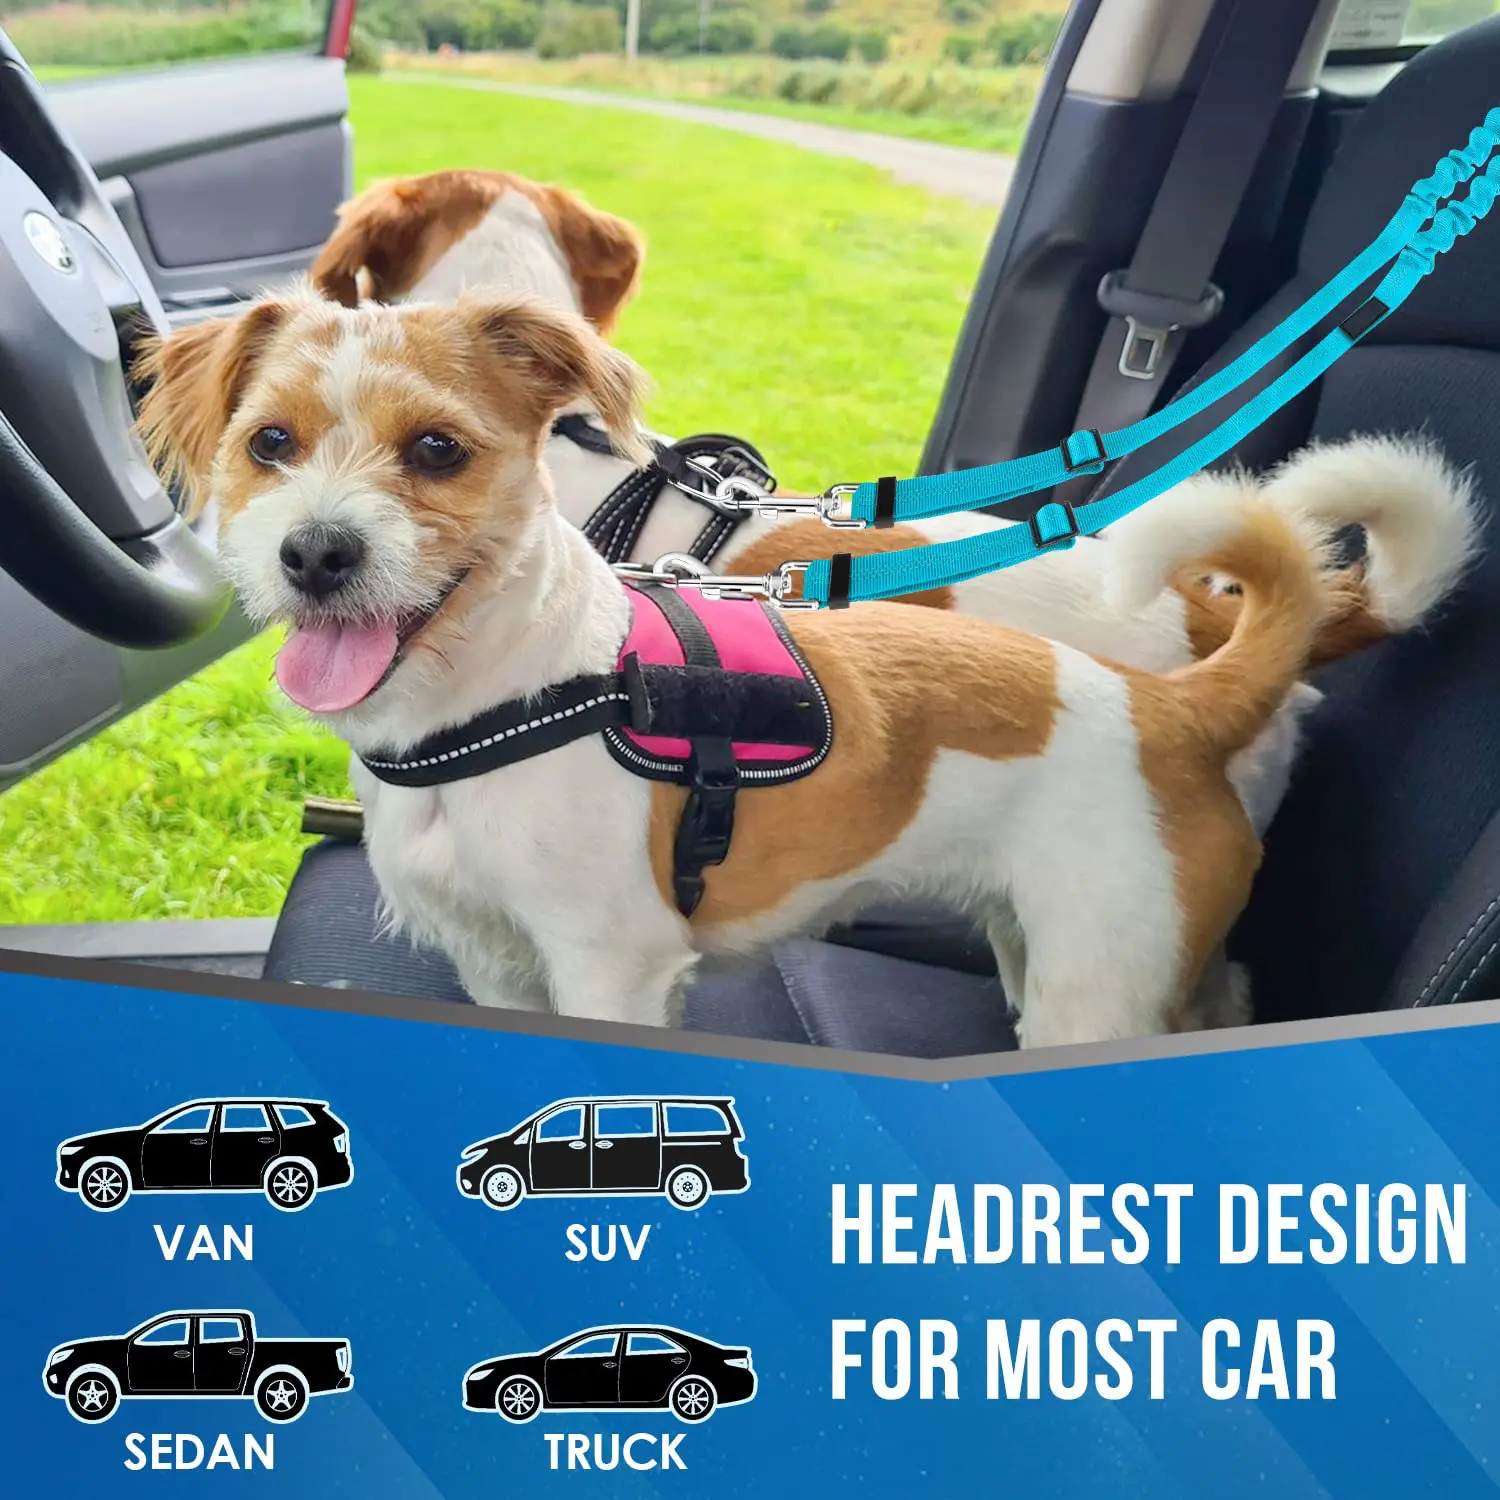 Sabuk pengaman sandaran kepala mobil hewan peliharaan ganda baru tali anjing pengaman tugas penyesuaian elastis Bungee Harness dalam perjalanan untuk 2 anjing